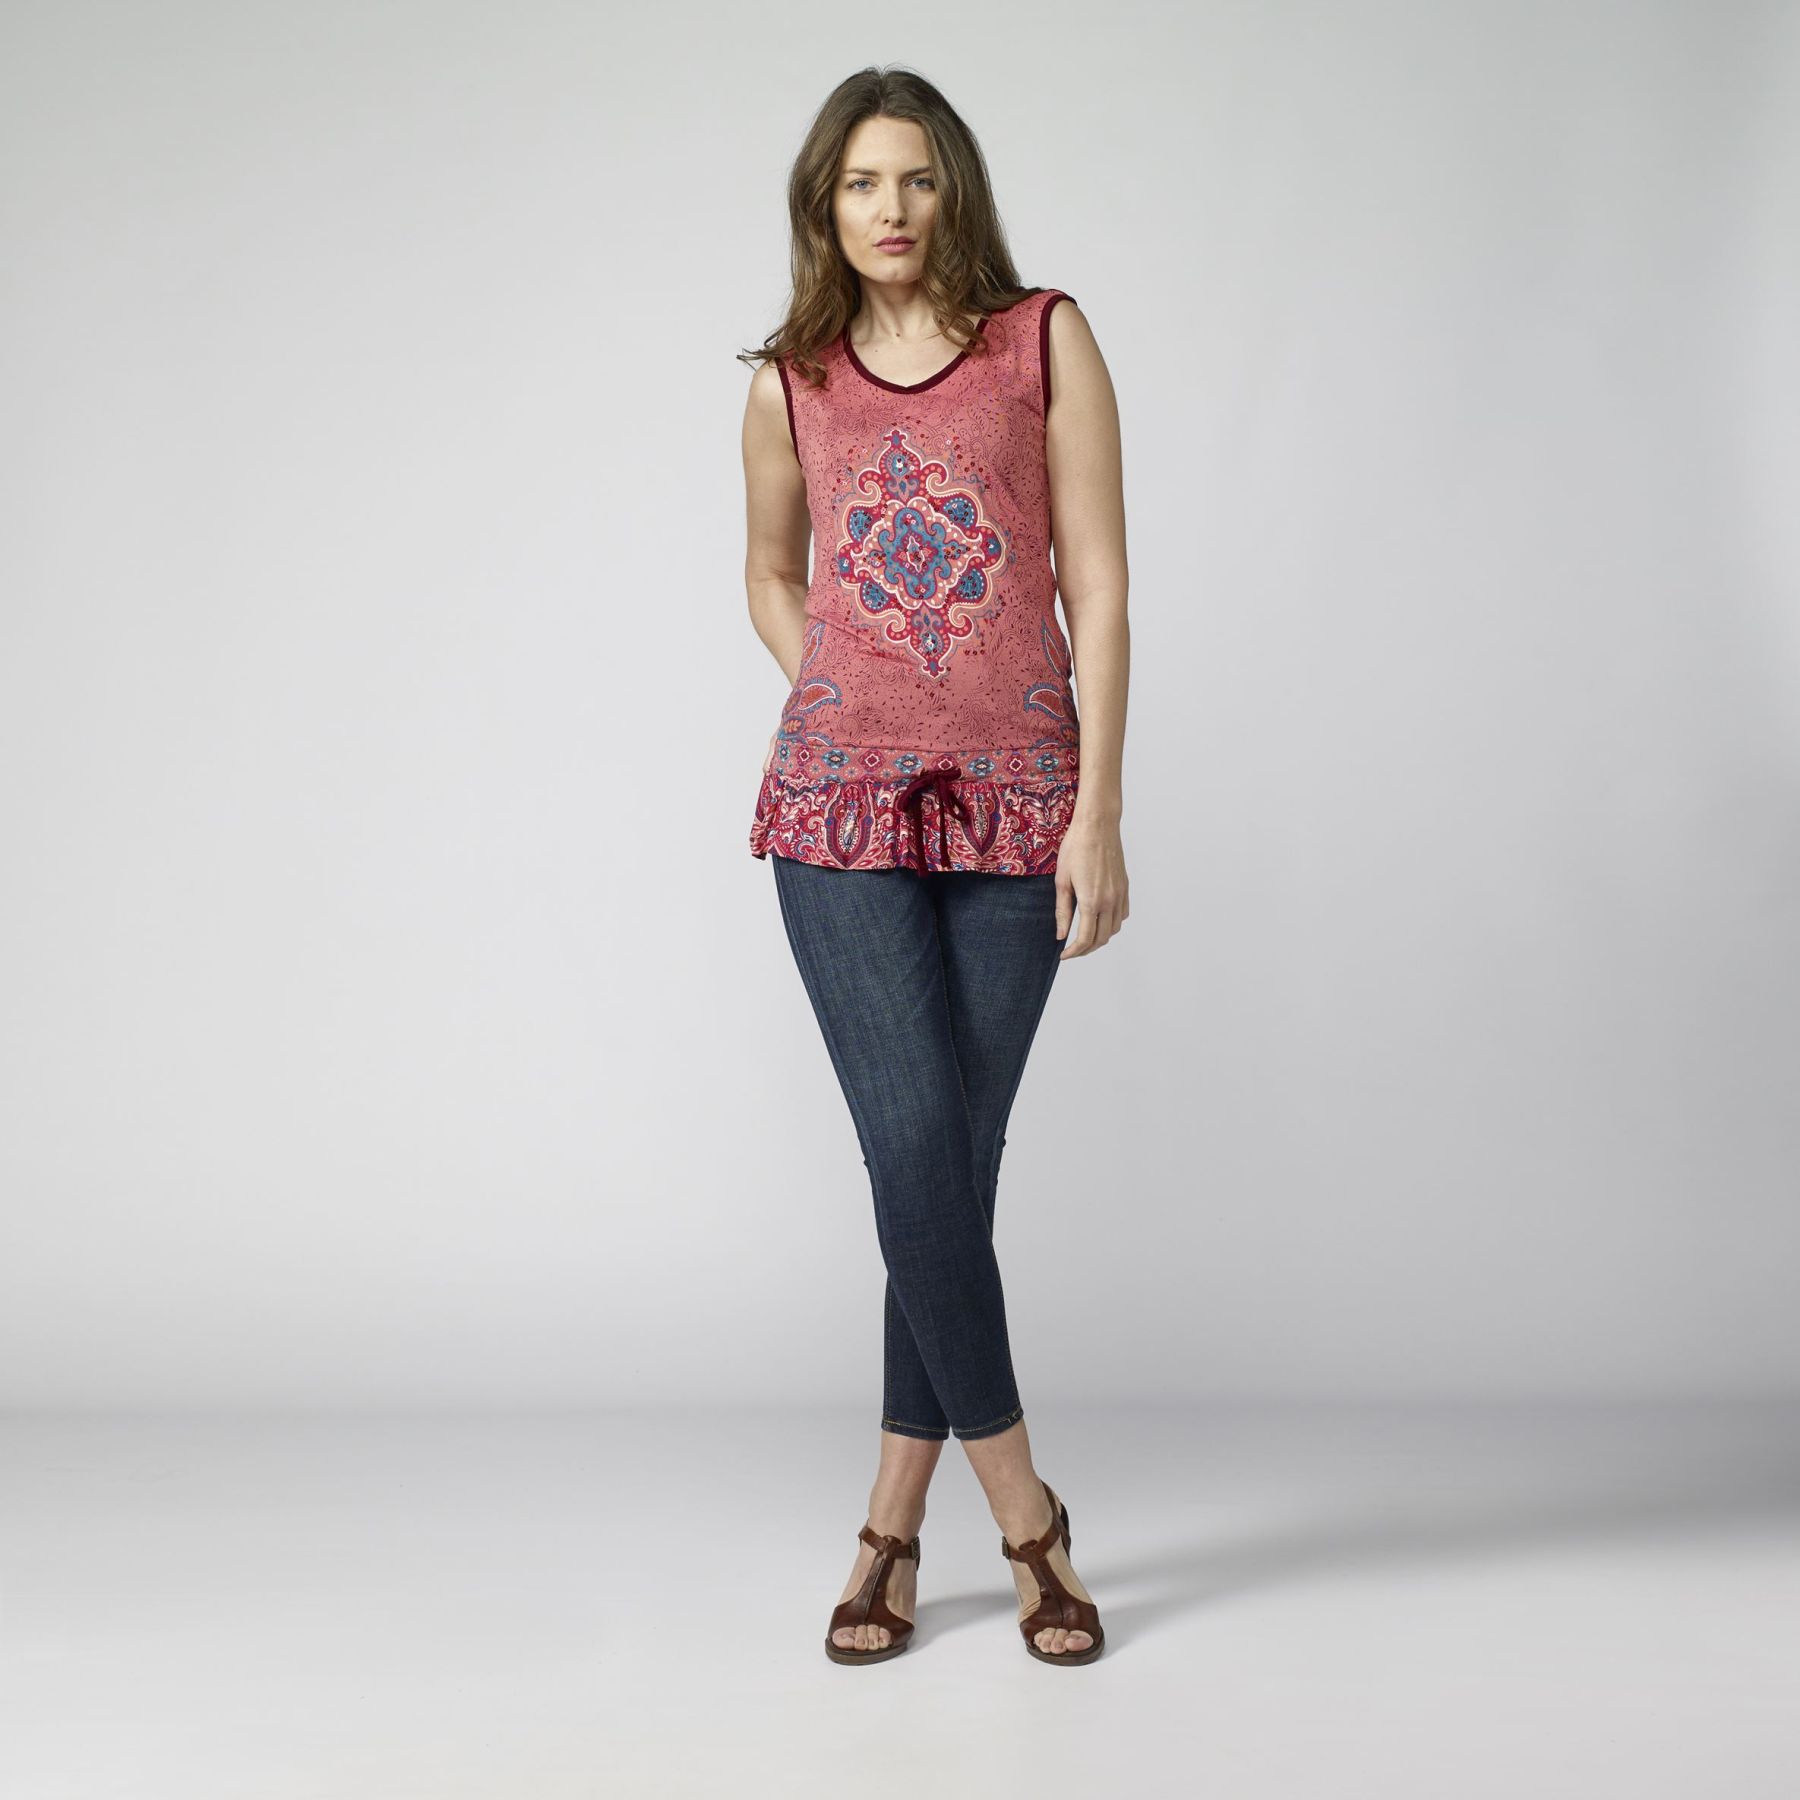 Camiseta top sin mangas estampado étnico color Coral para Mujer